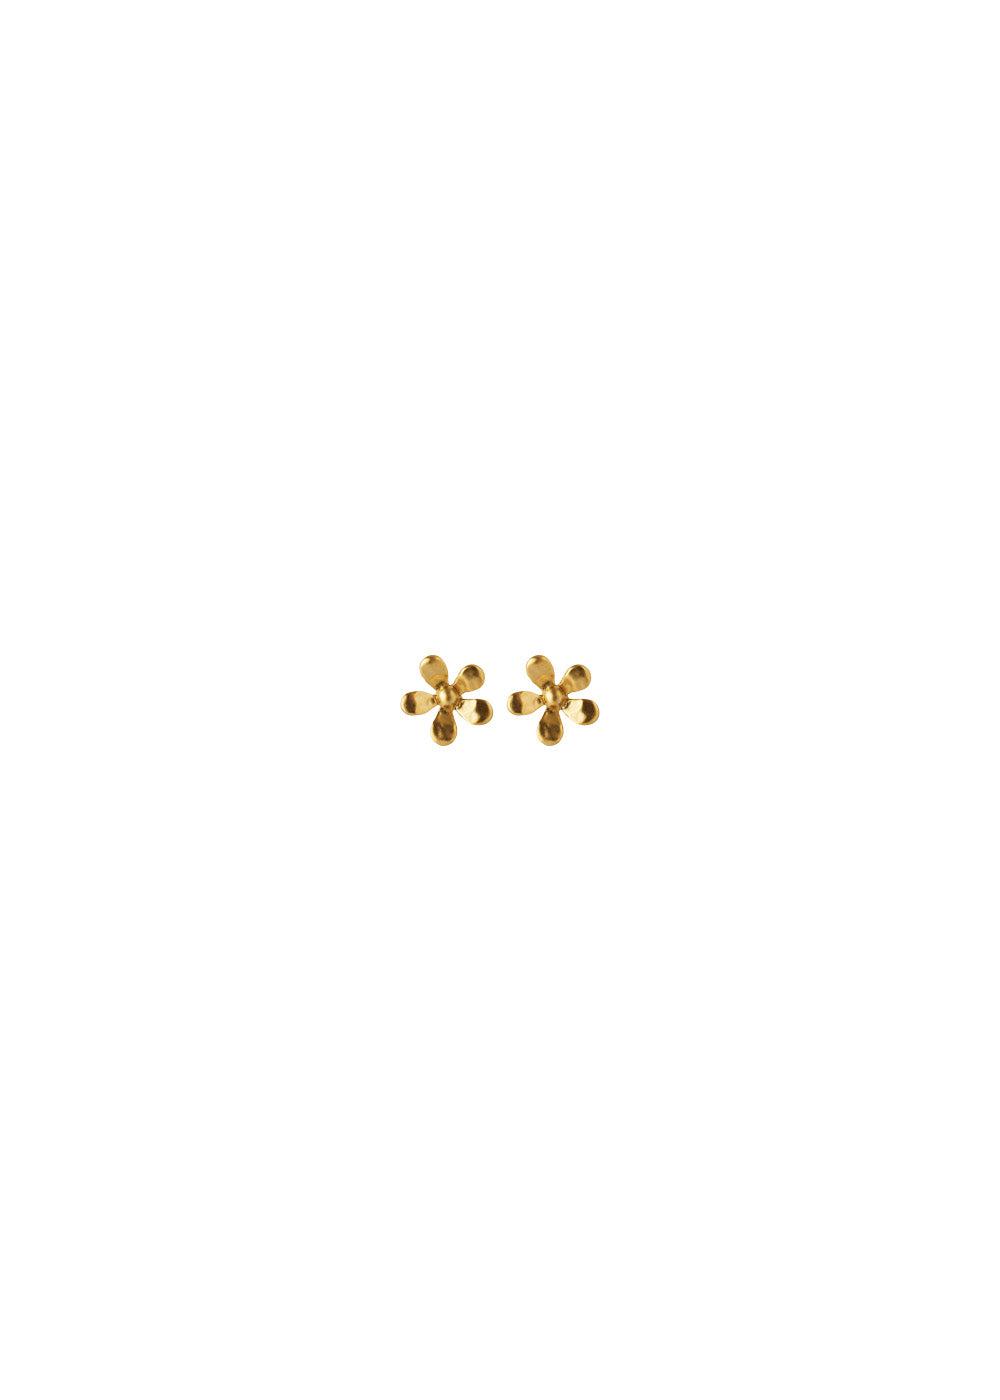 Wild Poppy Earsticks - Gold